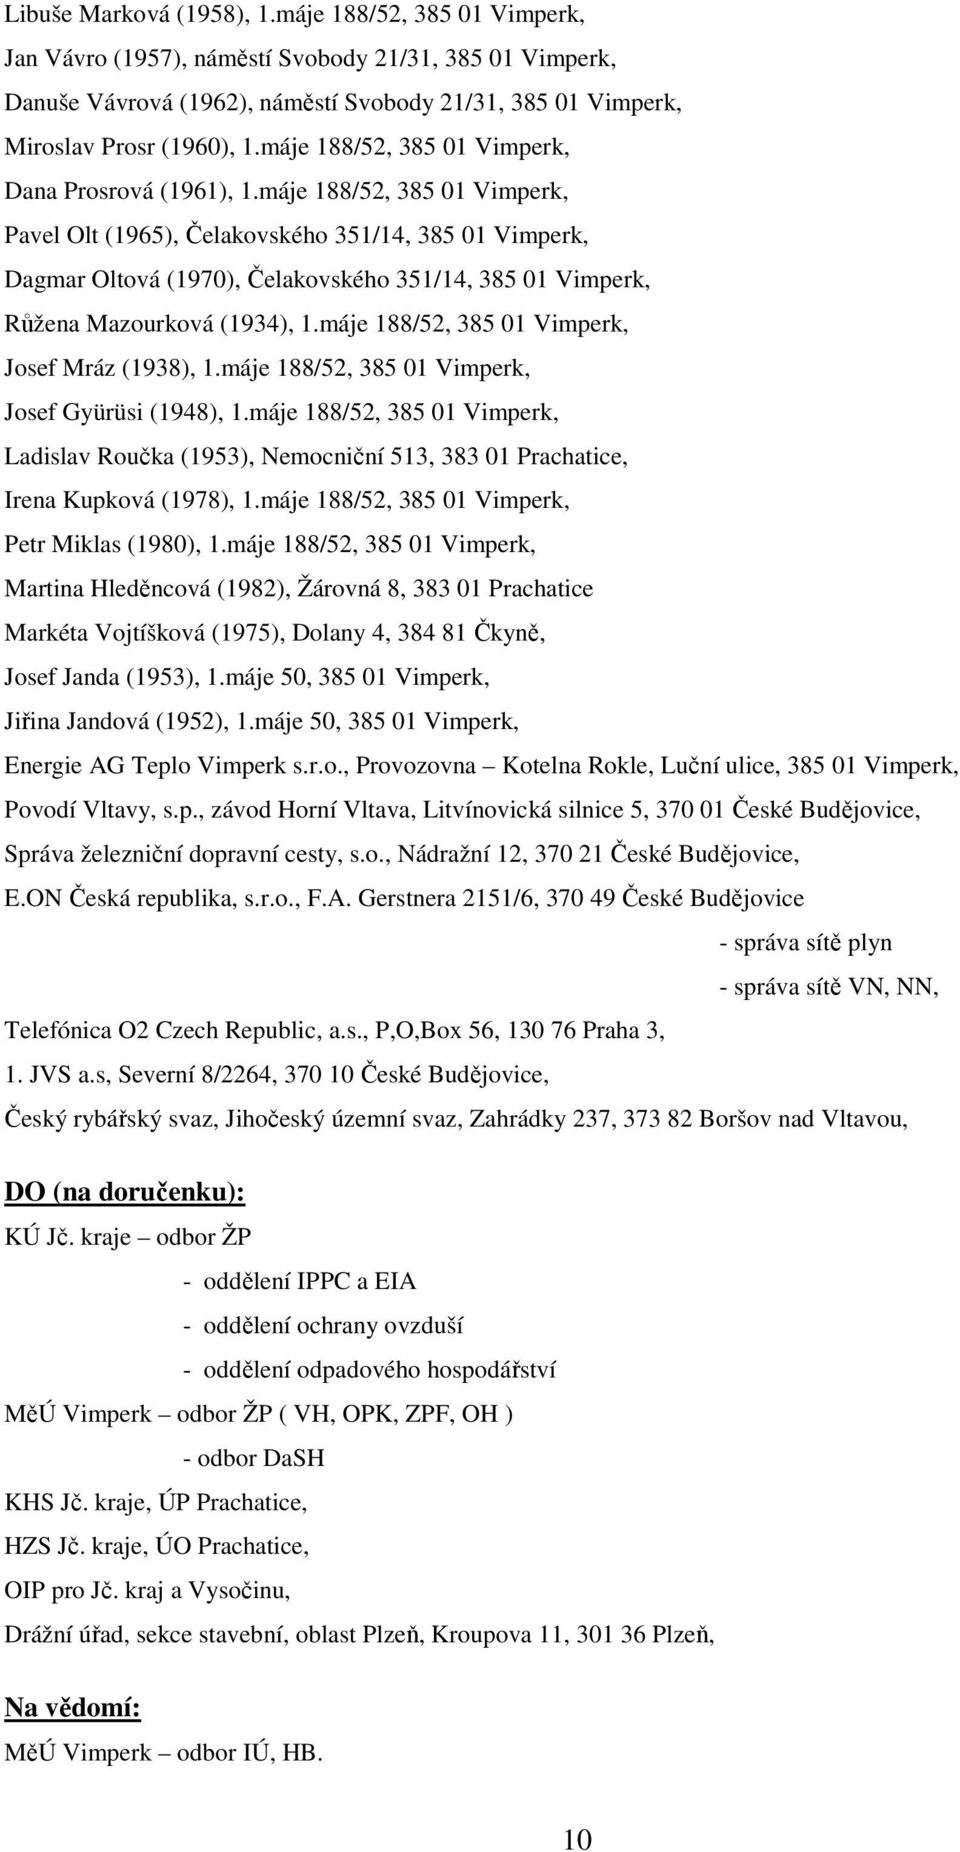 máje 188/52, 385 01 Vimperk, Pavel Olt (1965), Čelakovského 351/14, 385 01 Vimperk, Dagmar Oltová (1970), Čelakovského 351/14, 385 01 Vimperk, Růžena Mazourková (1934), 1.